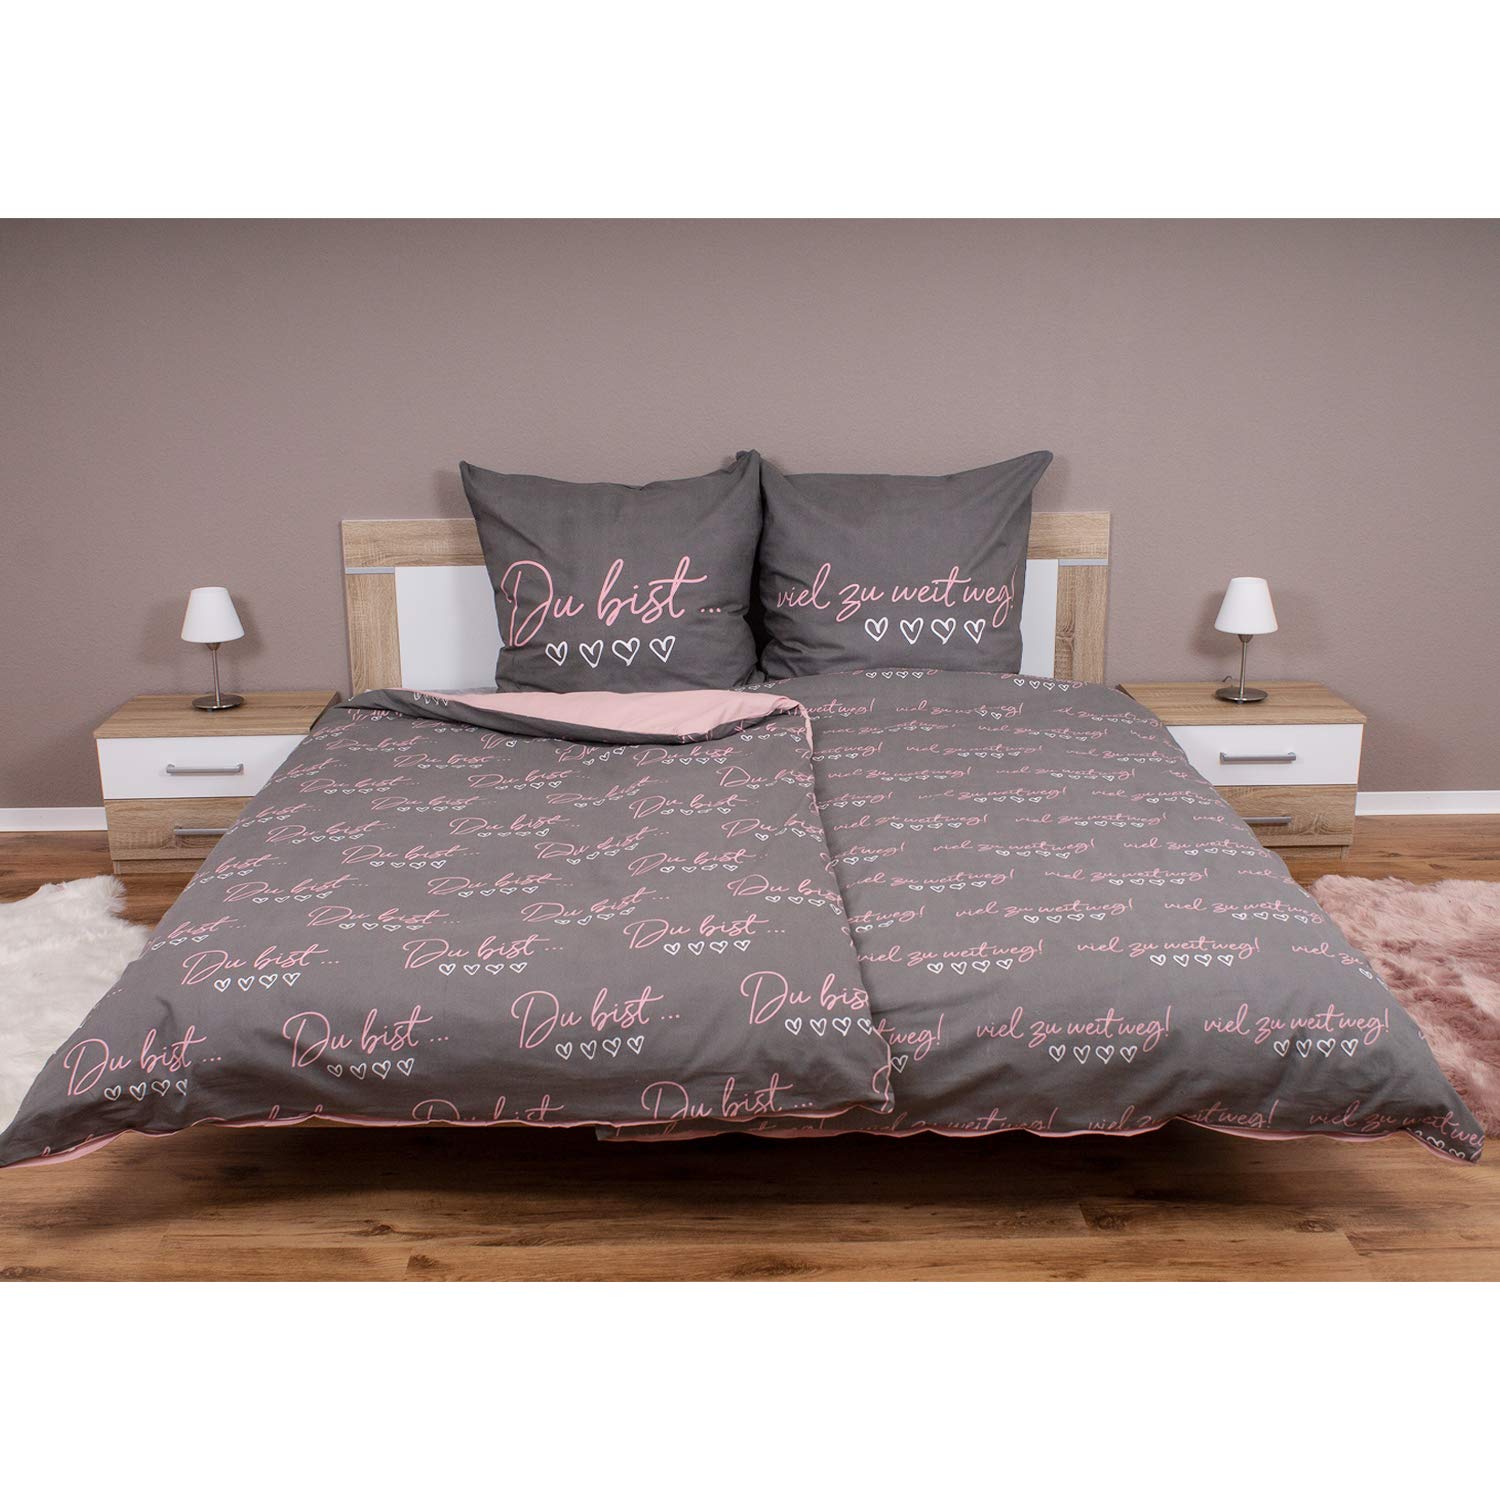 INDA-Exclusiv 4-teilige Renforcé Partner Bettwäsche Bettbezug Grau/Rosa Schriftzug Baumwolle mit Reißverschluß 135x200cm + 80x80cm